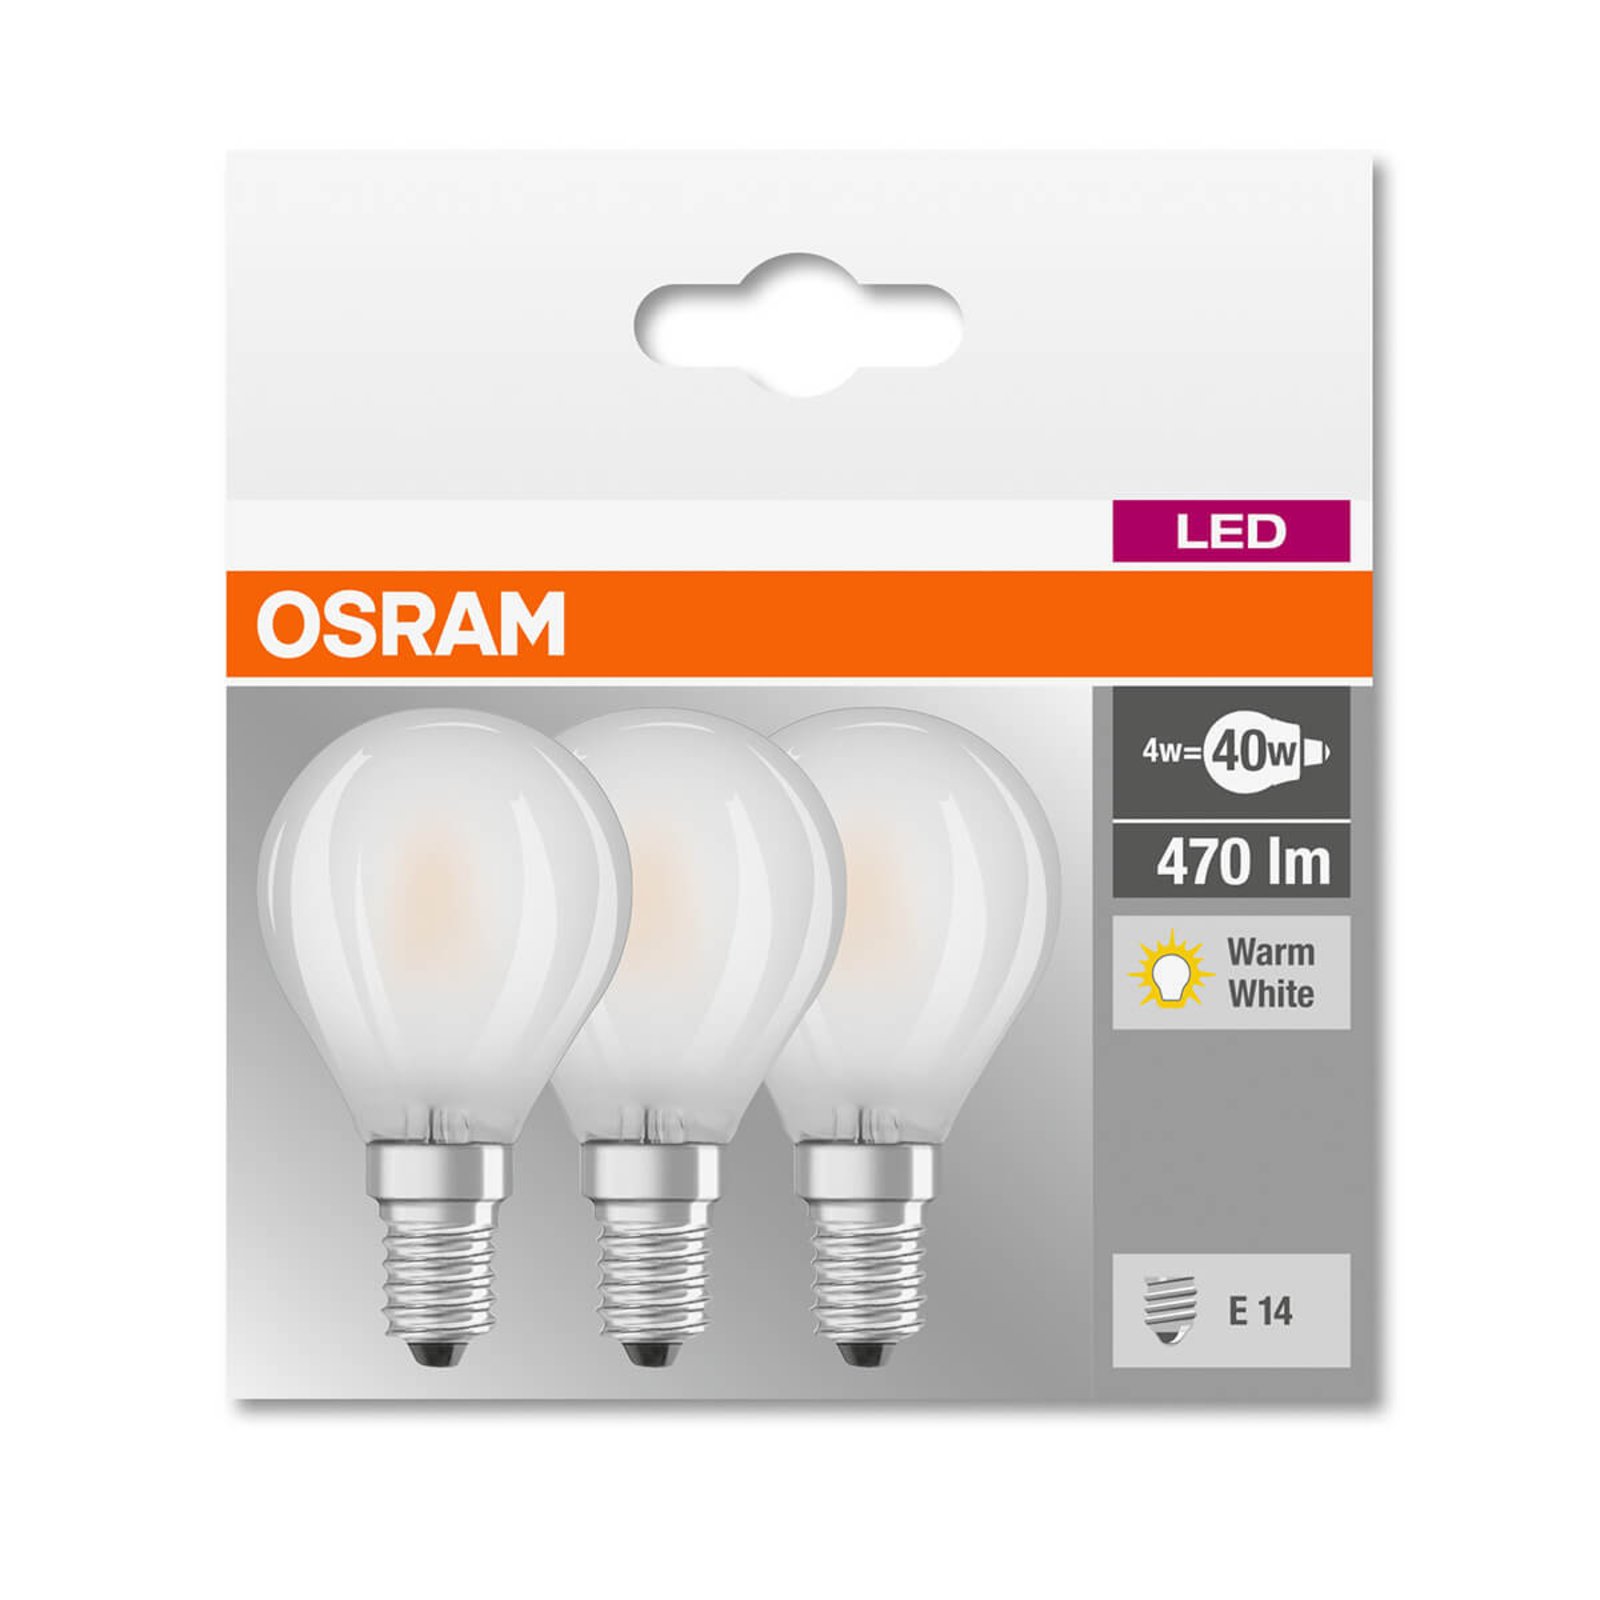 Ampoule LED E14 4 W, blanc chaud, 470 lm, kit de 3